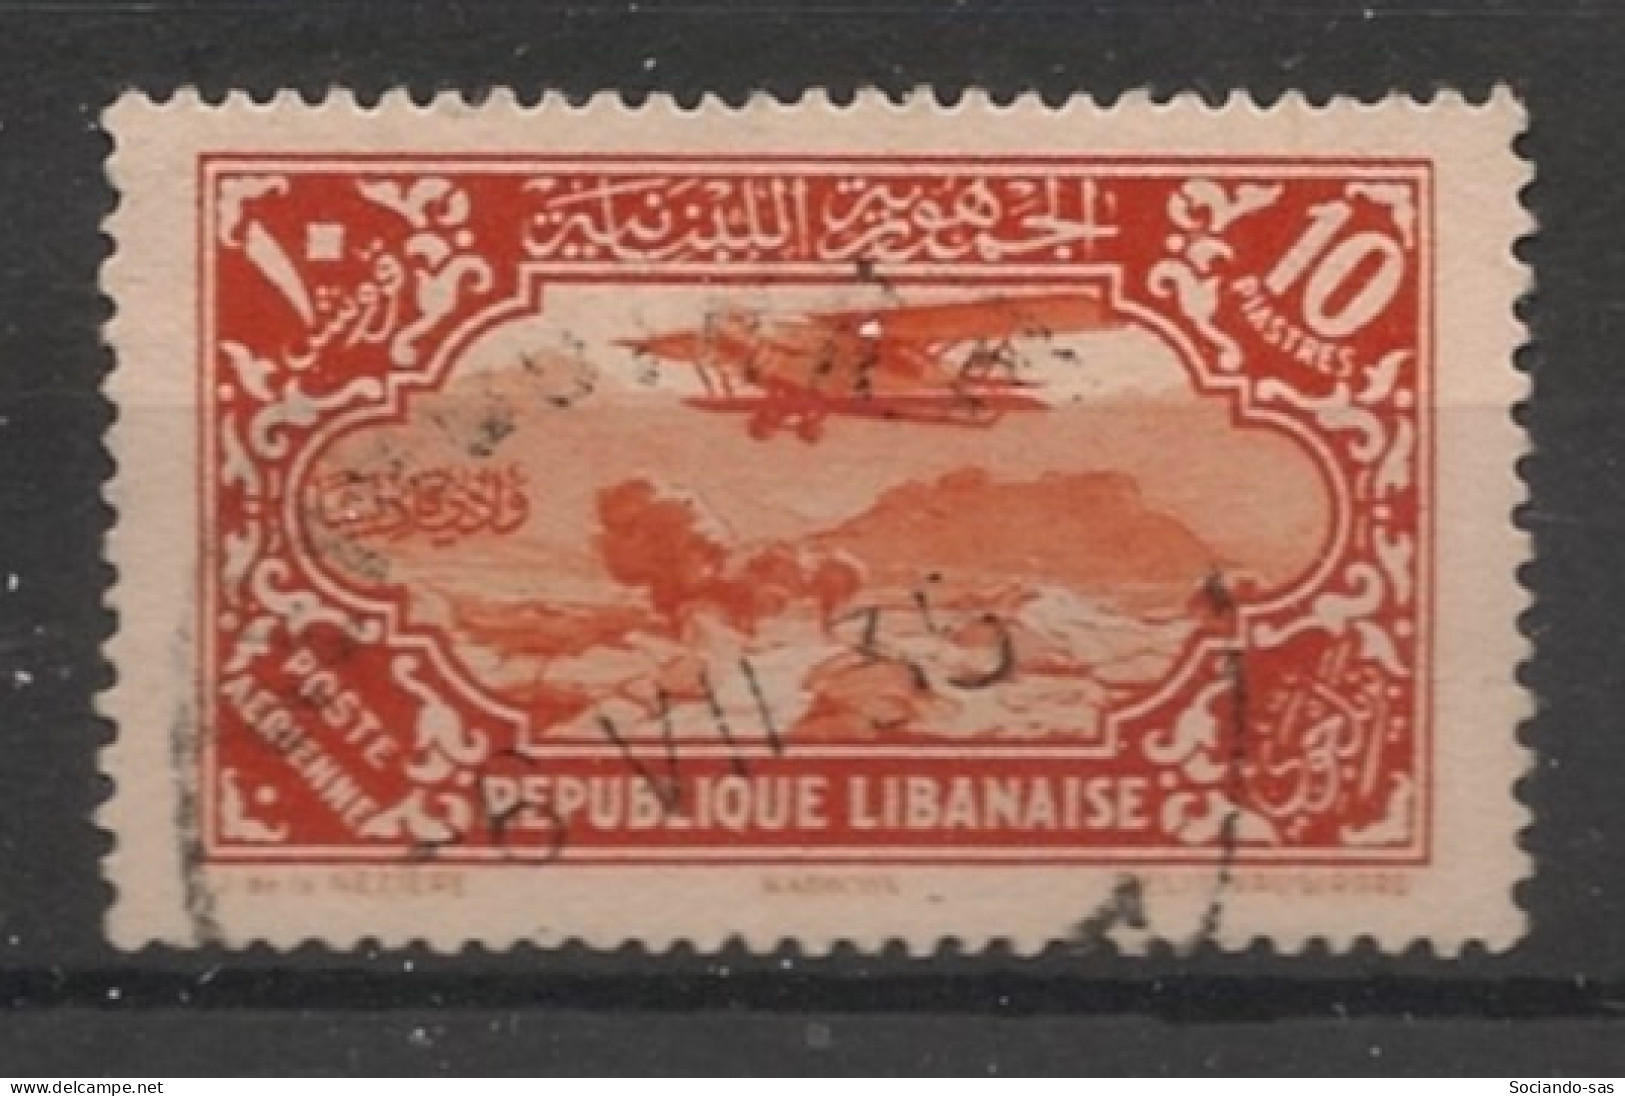 GRAND LIBAN - 1930-31 - Poste Aérienne PA N°YT. 44 - Avion 10pi Vermillon - Oblitéré / Used - Oblitérés